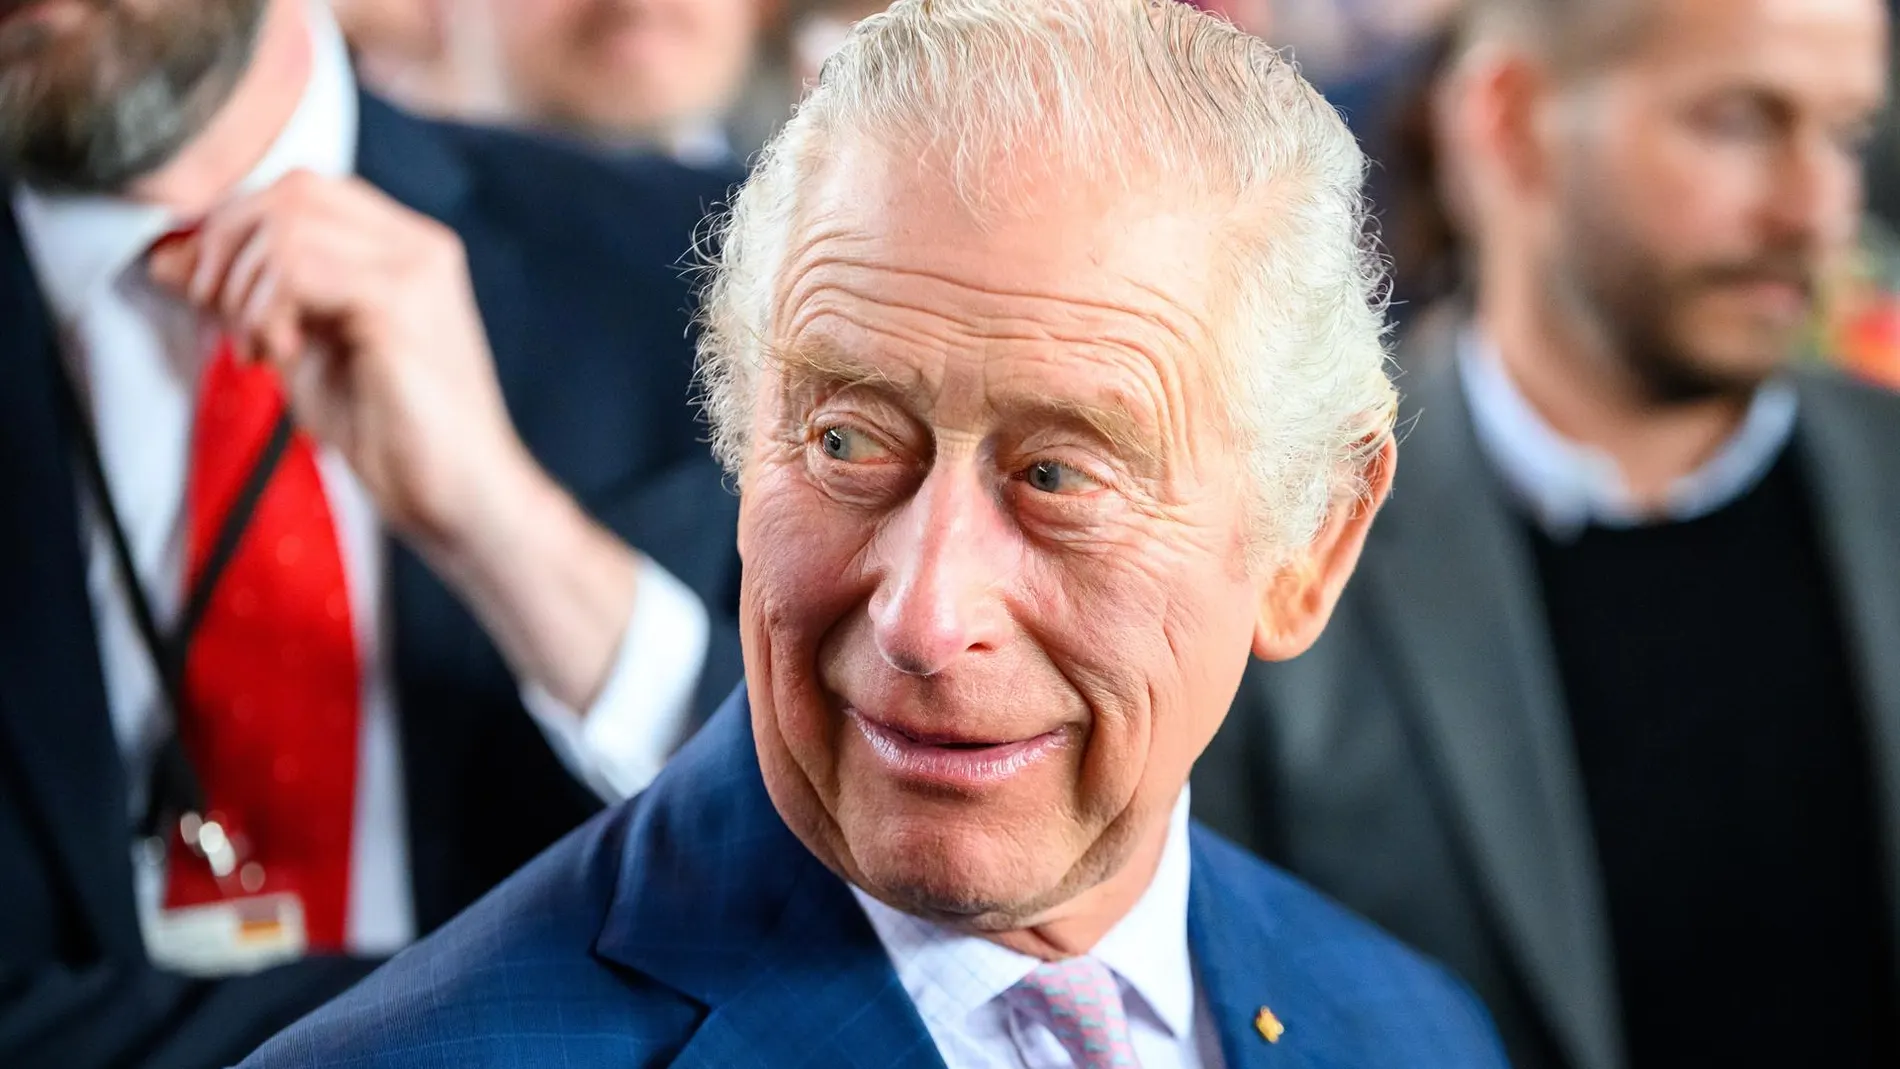 R.Unido.- Carlos III agradece "los muchos mensajes de apoyo" recibidos tras su diagnóstico de cáncer